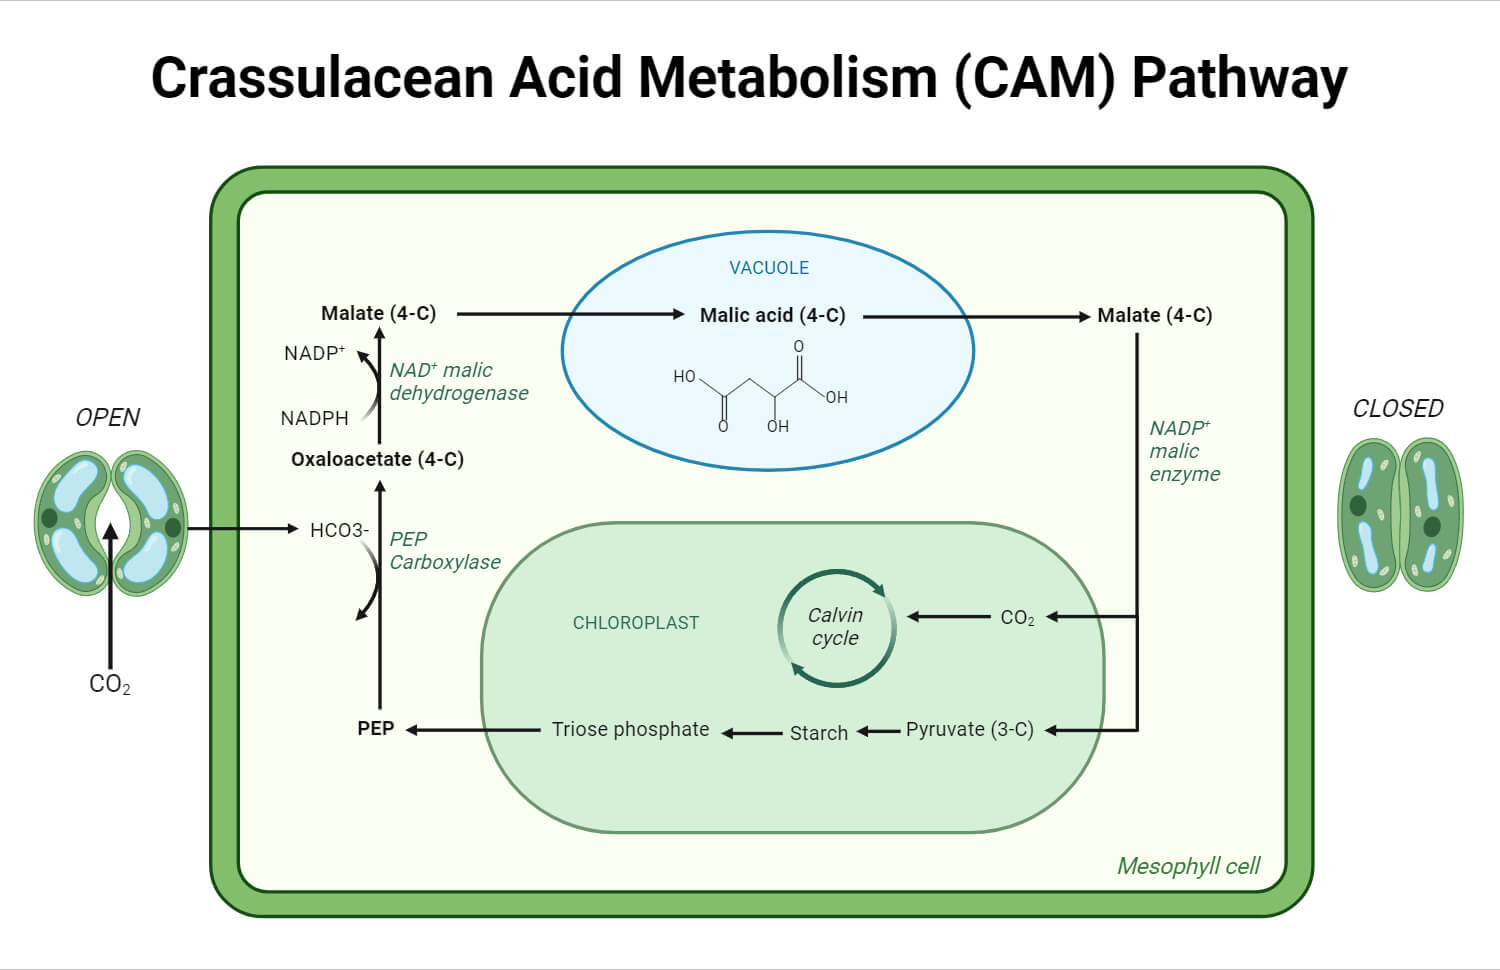 Crassulacean Acid Metabolism (CAM) pathway